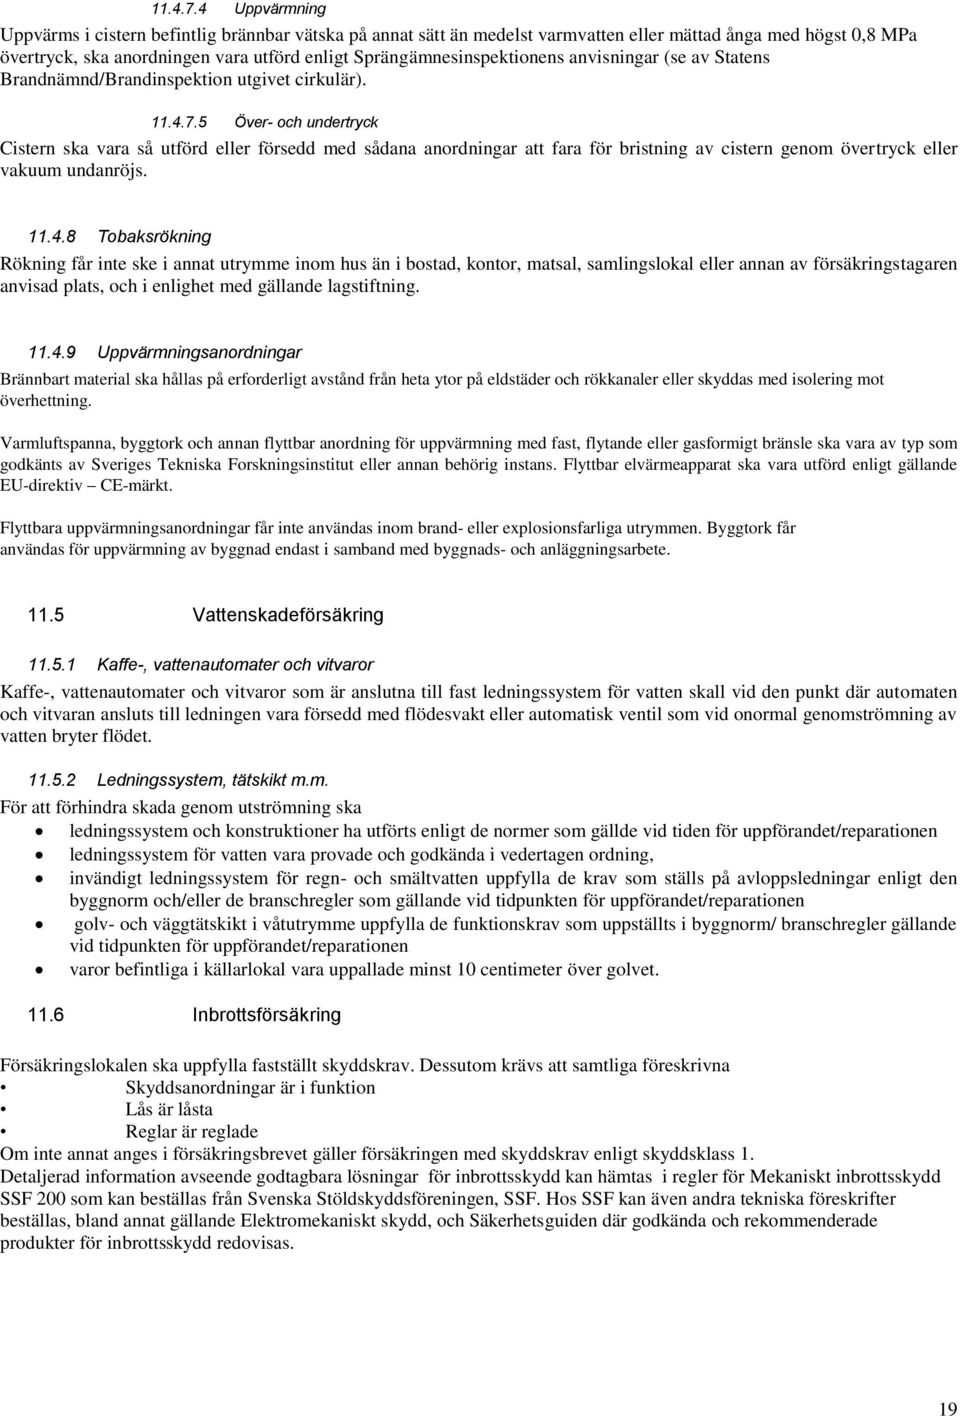 Sprängämnesinspektionens anvisningar (se av Statens Brandnämnd/Brandinspektion utgivet cirkulär).